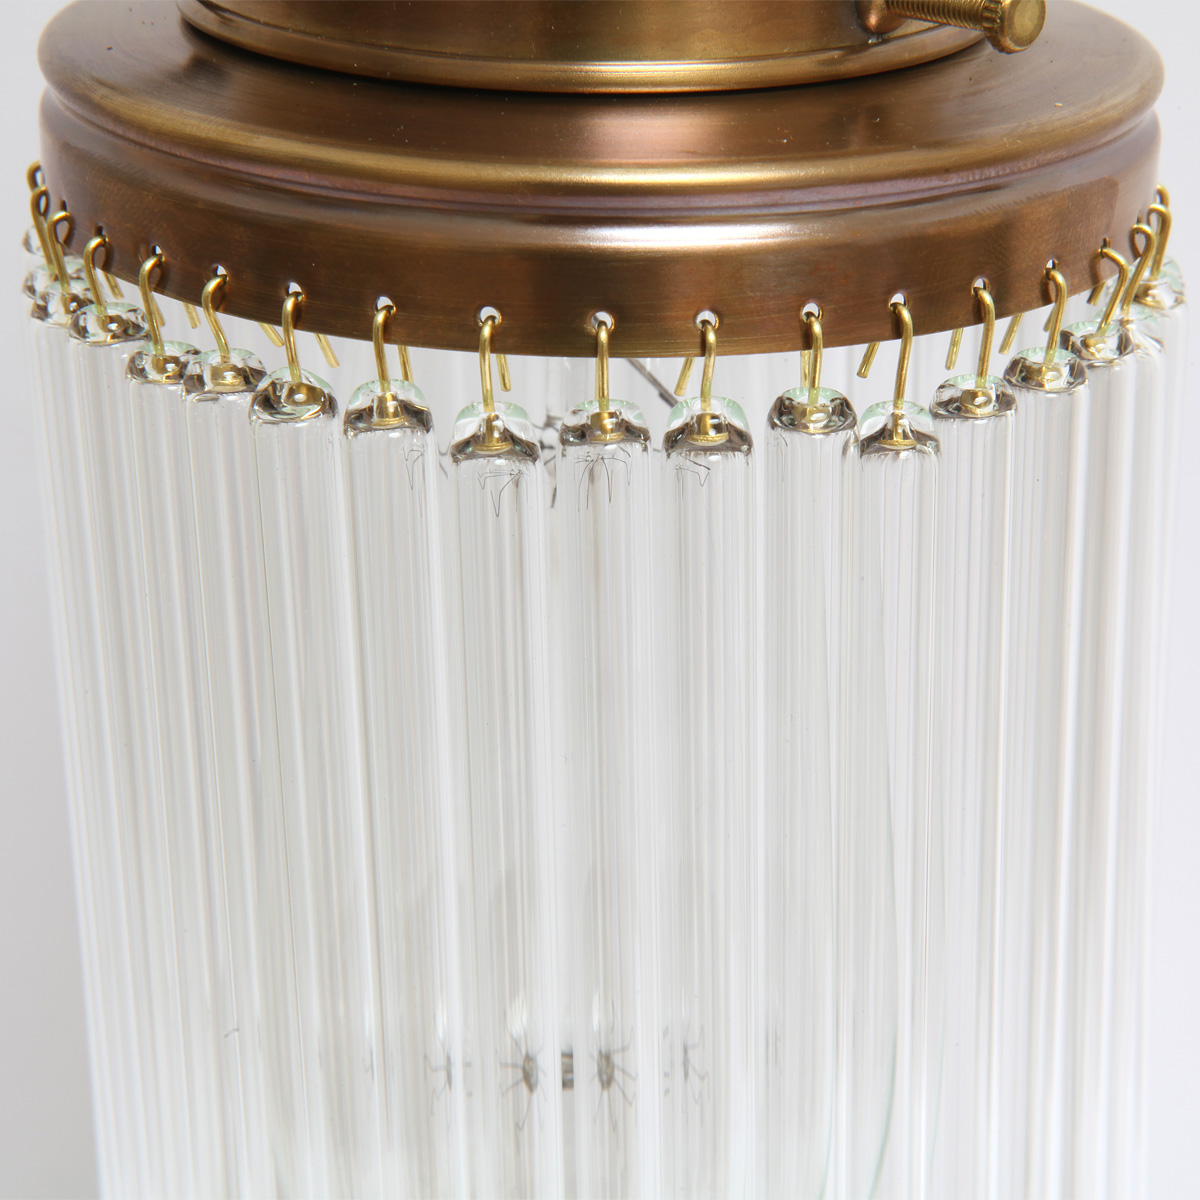 Stile Liberty-Wandlampe mit Kristallglas TRENTINO V: Filigrane Kristall-Glasstäbchen sorgen für eine interessantes Lichtspiel (Ausführung handpatiniert-Altmessing)